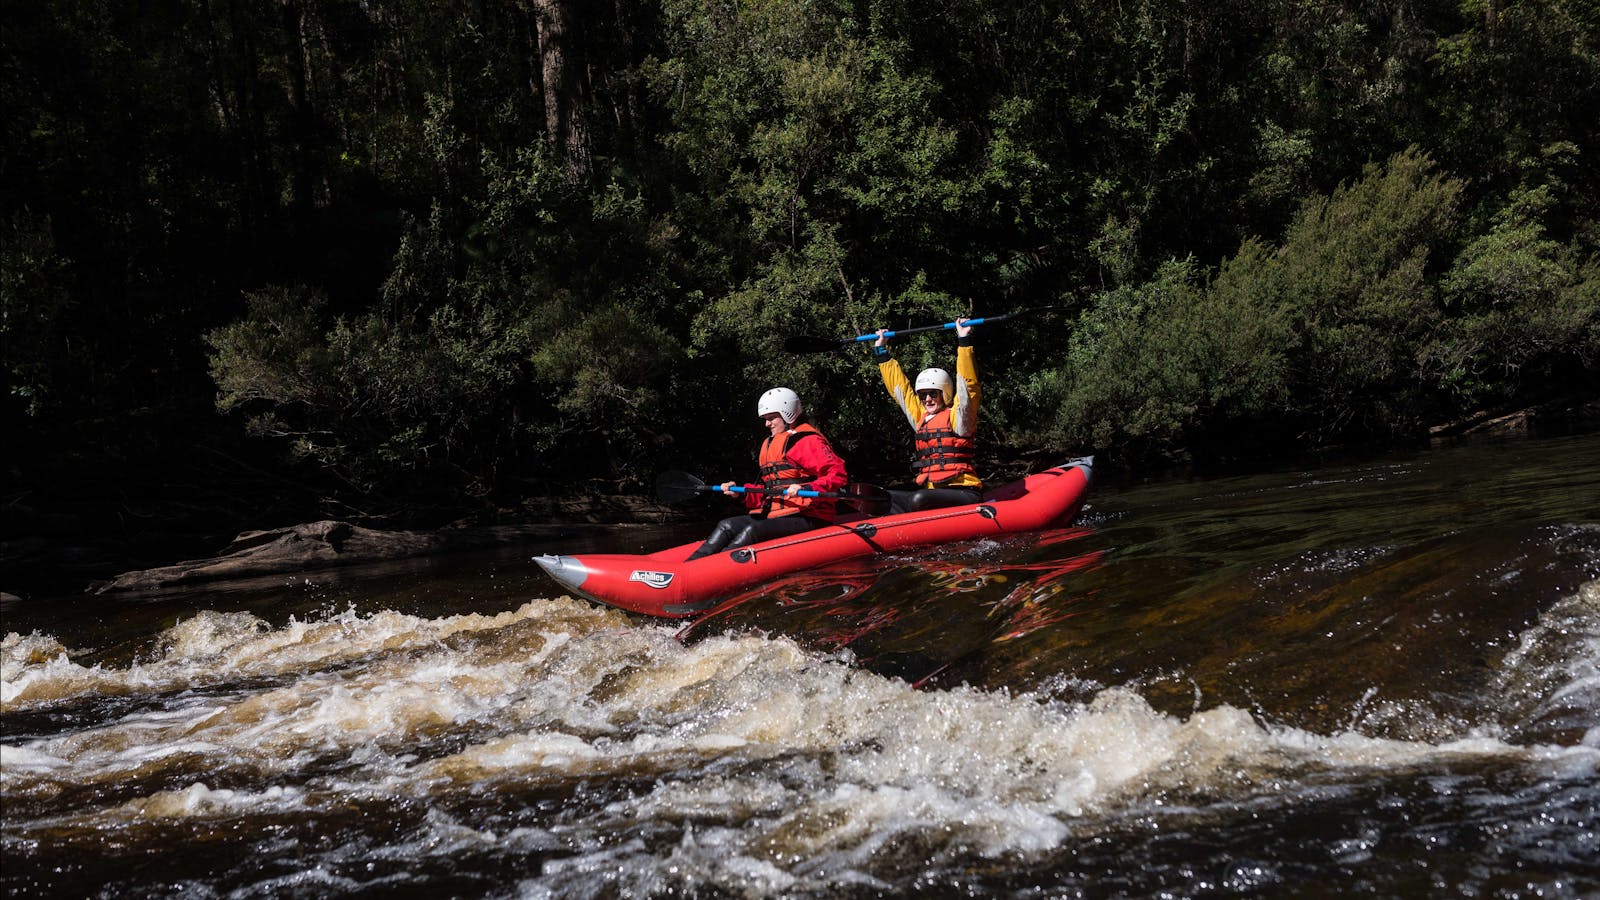 Twin River Adventure - Huon River Tasmania